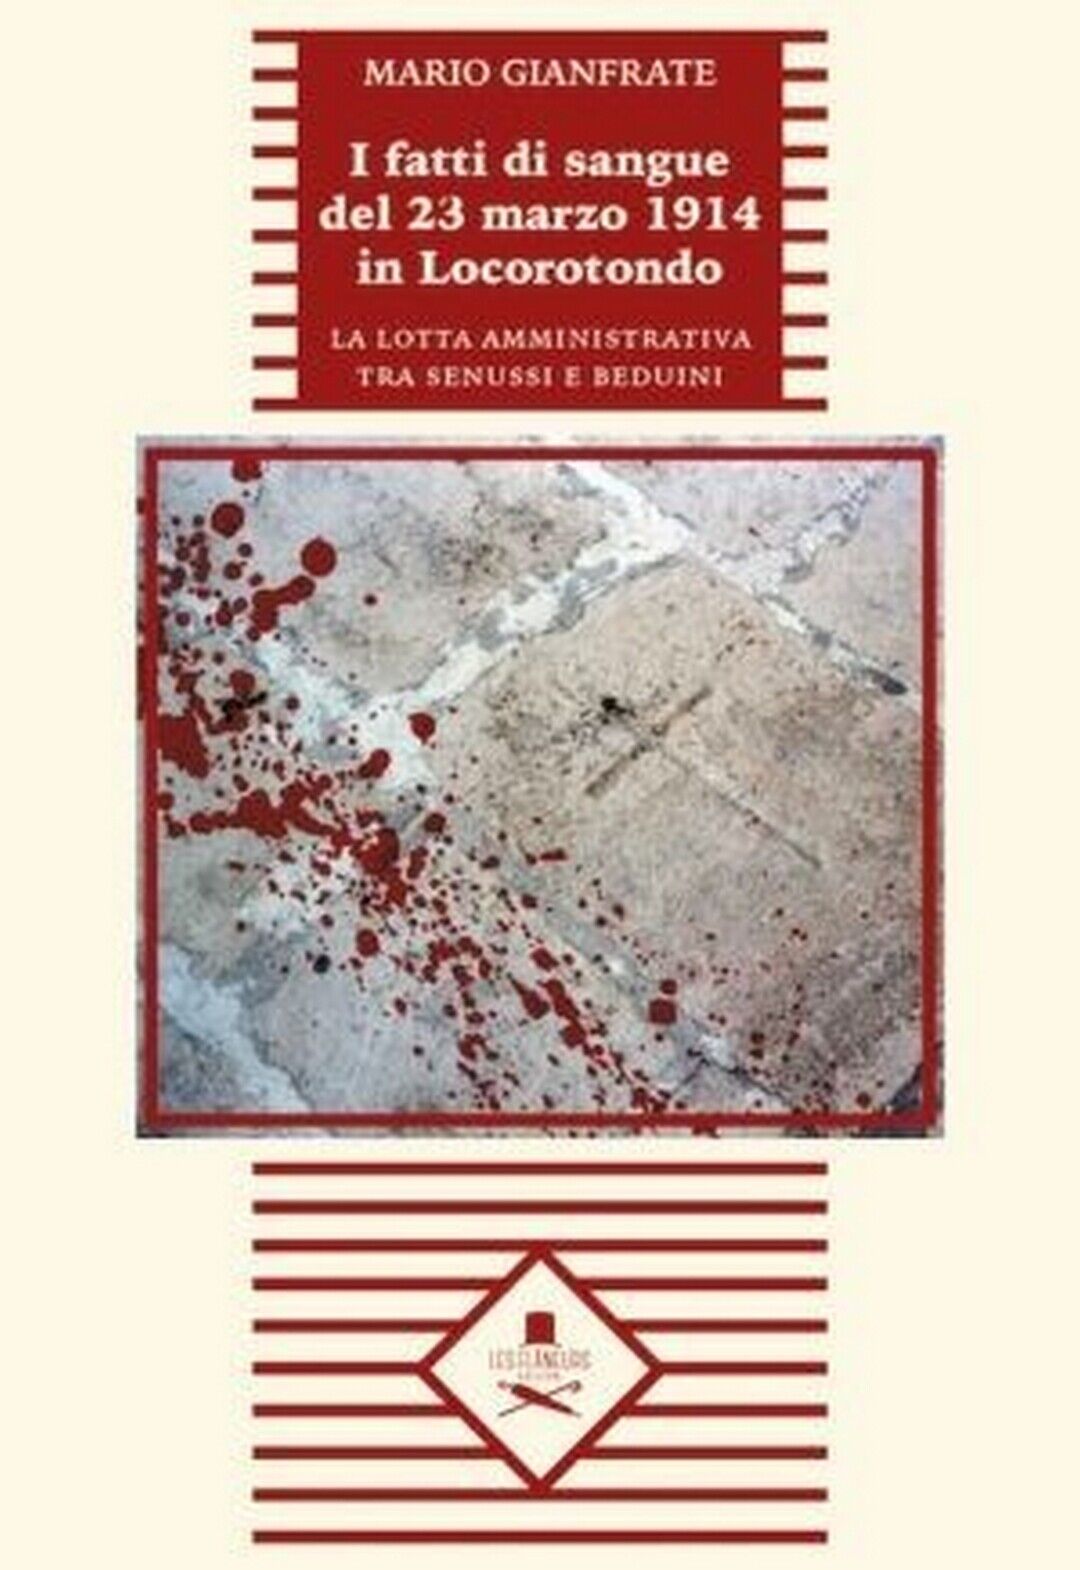 I fatti di sangue del 23 marzo 1914 in Locorotondo  di Mario Gianfrate, Flaneurs libro usato